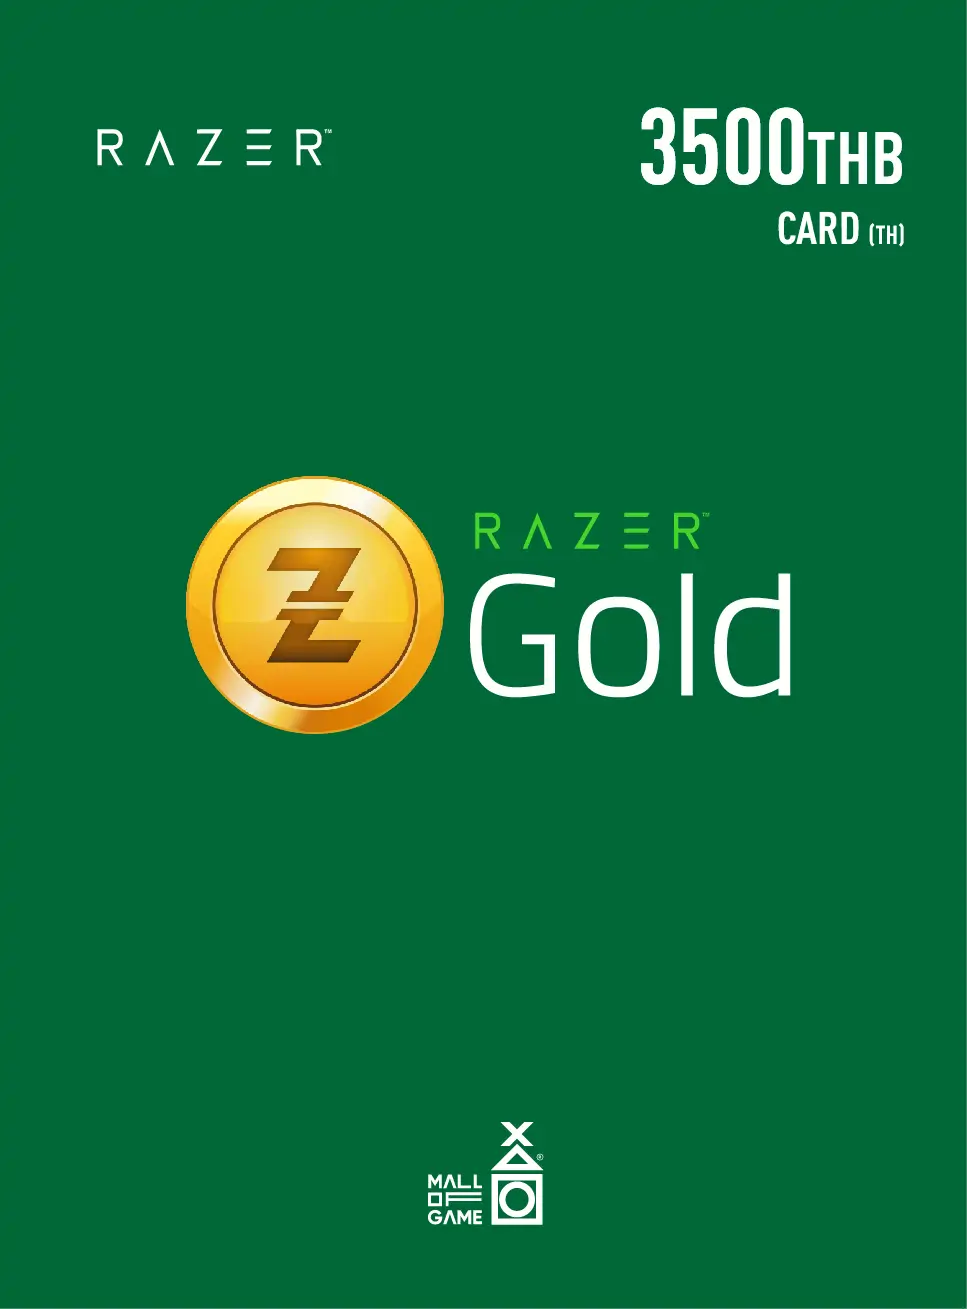 Razer Gold THB3500 (TH)